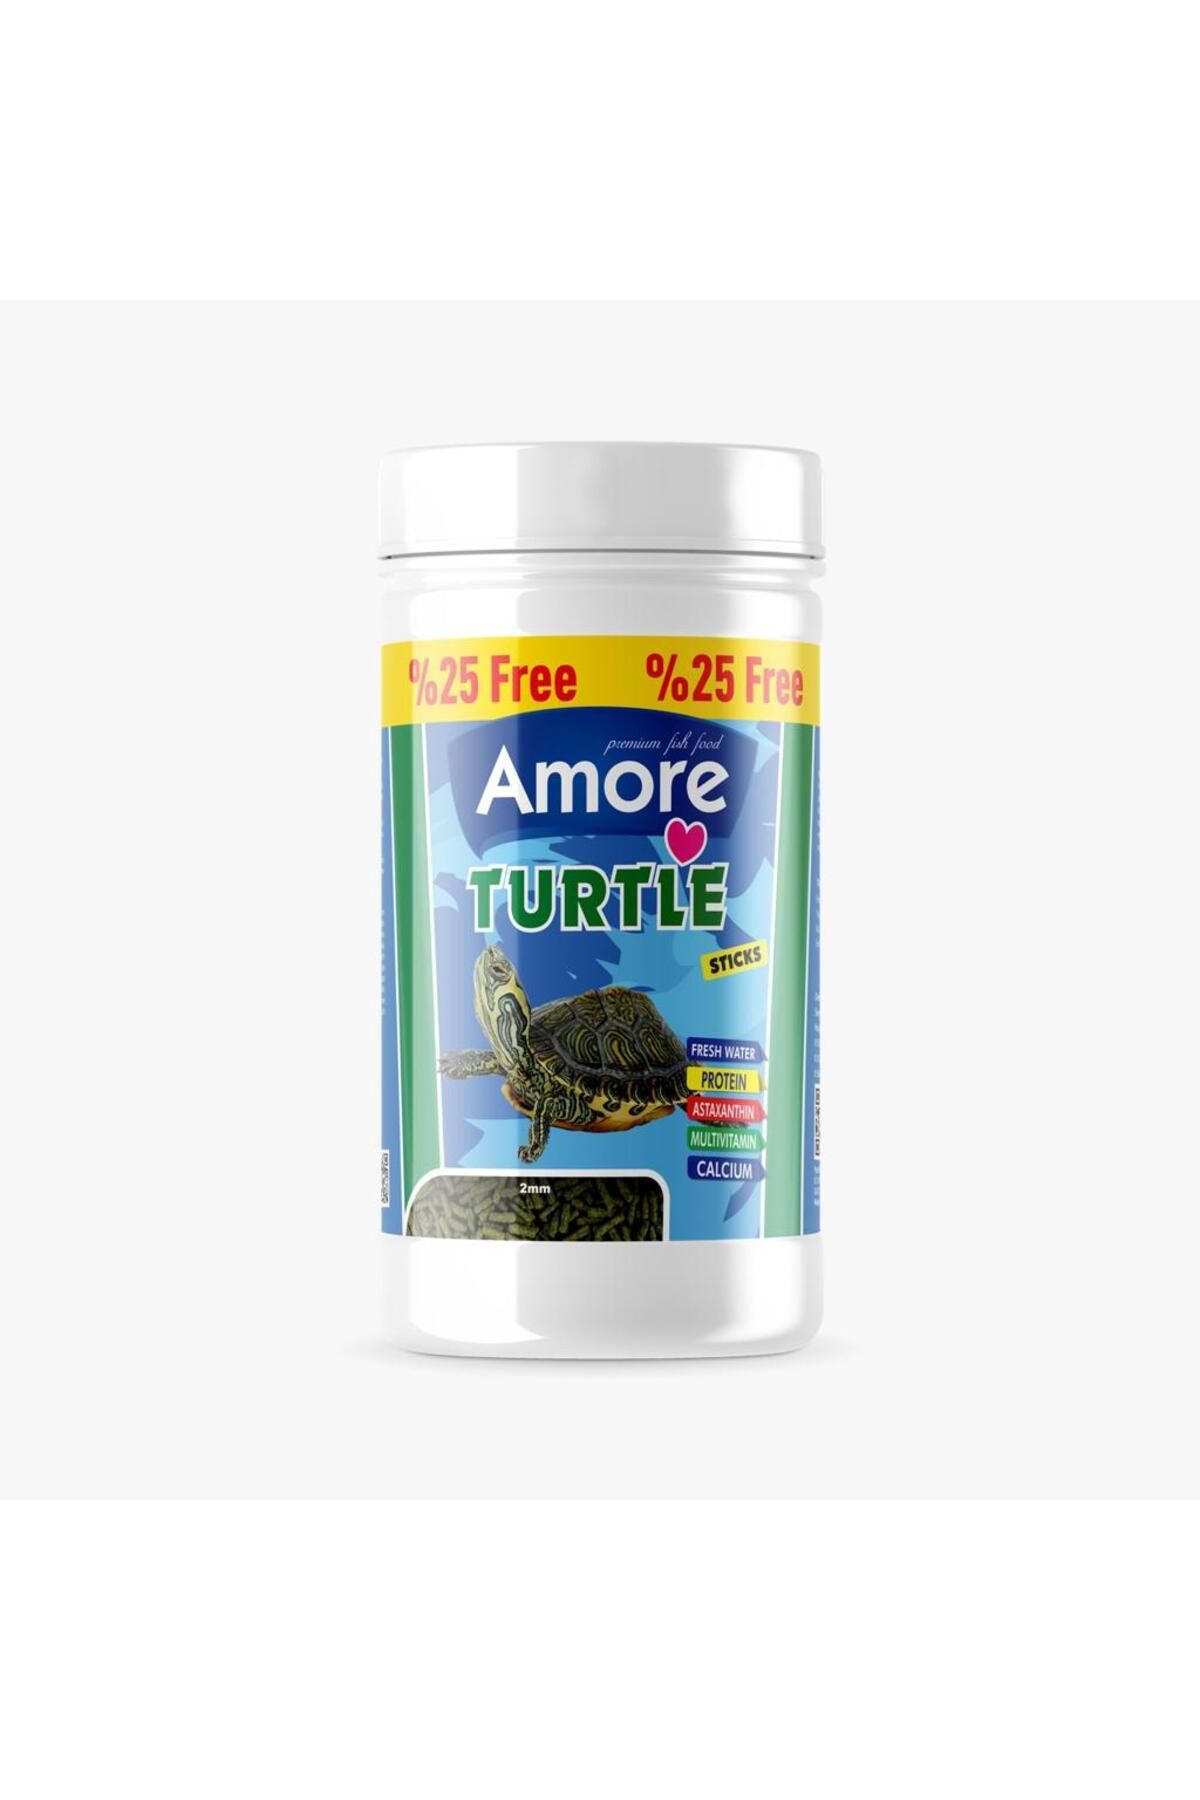 Amore Turtle Green Calcium Sticks 8x125 ml Kalsiyum ve Vitaminli Kaplumbaga Yemi, 2-Berraklastirici